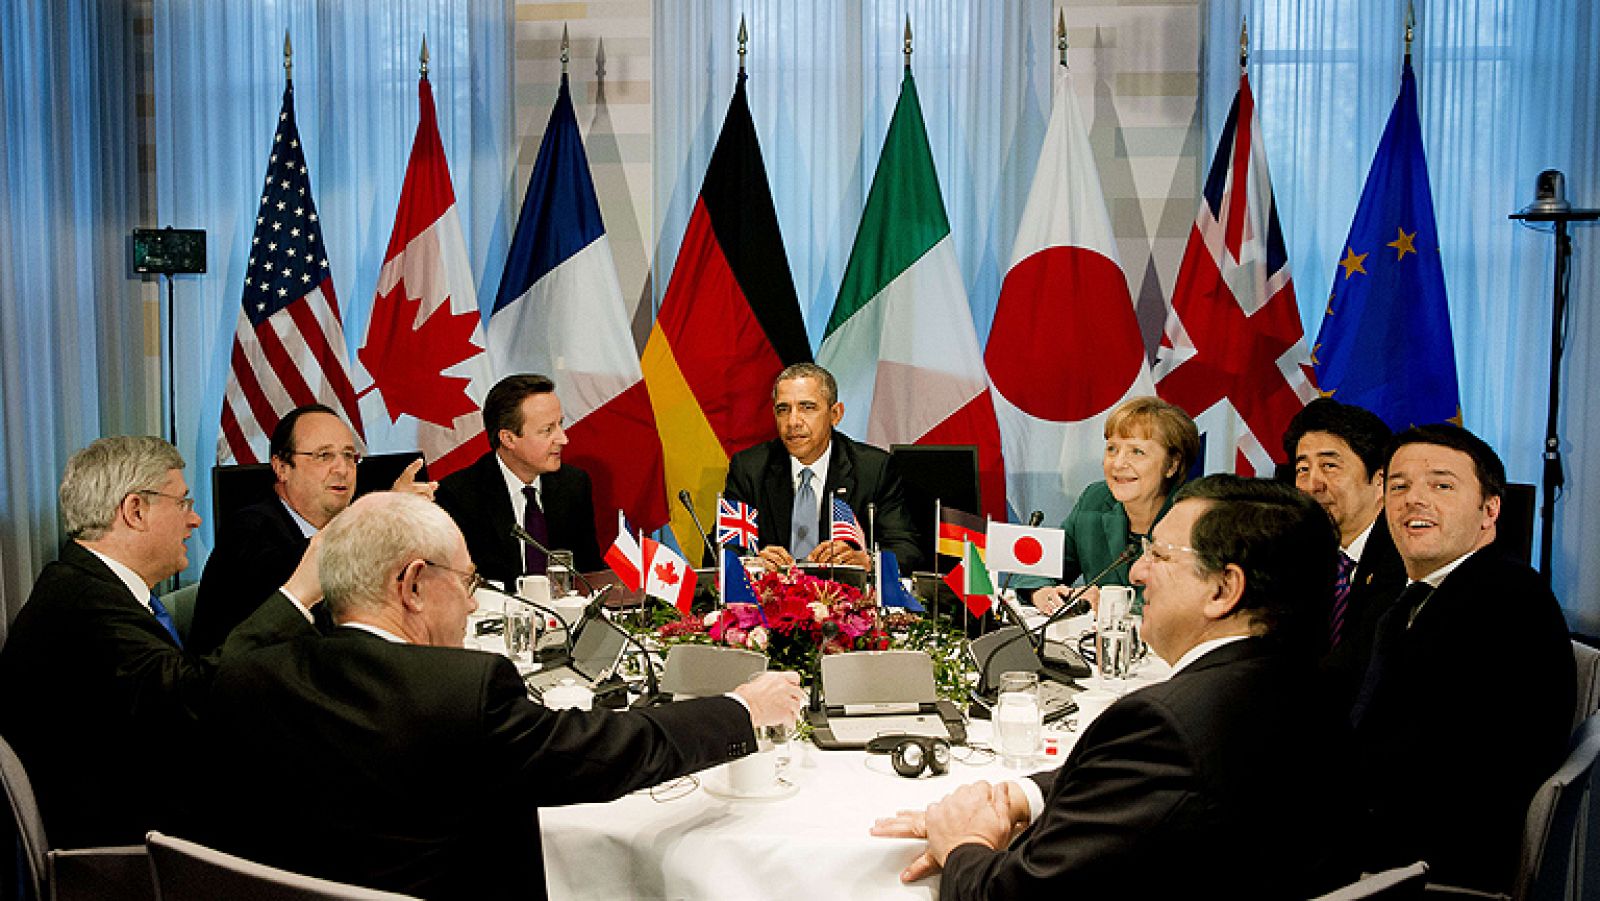  Los jefes de Estado y de Gobierno del G7 también han decidido no participar más con Rusia en reuniones del formato G8 hasta que Moscú "cambie su rumbo" y el clima vuelva a ser el adecuado. Además, ha decidido celebrar una cumbre en Bruselas en junio próximo en lugar de la que se iba a celebrar en Rusia.